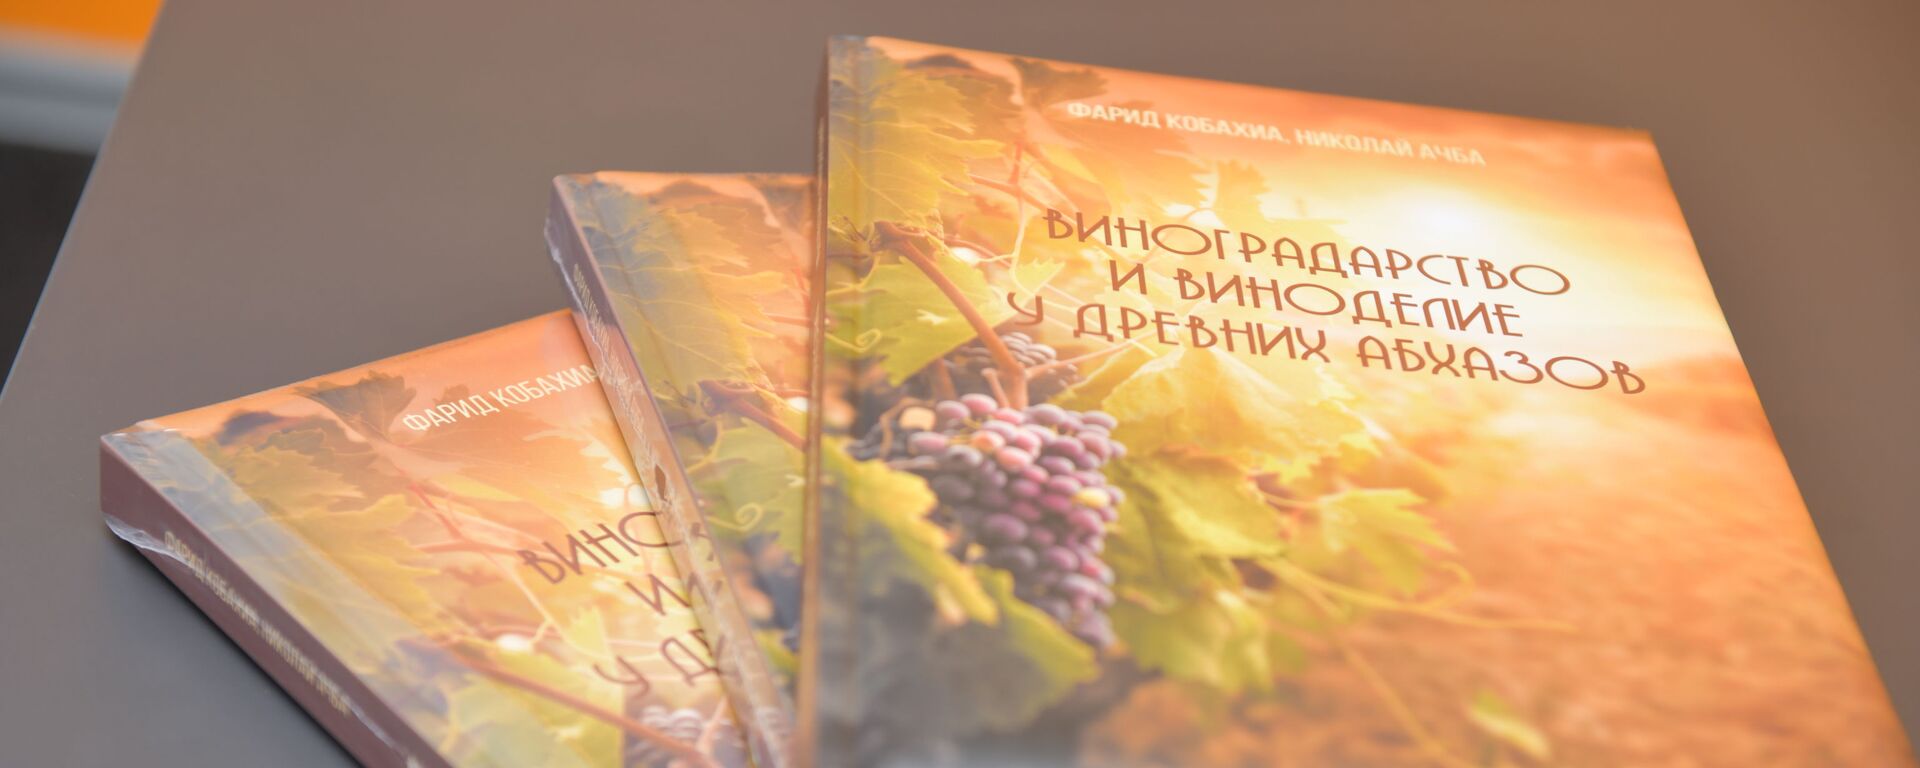 Презентация книги Виноградарство и виноделие у древних абхазов - Sputnik Абхазия, 1920, 02.10.2020